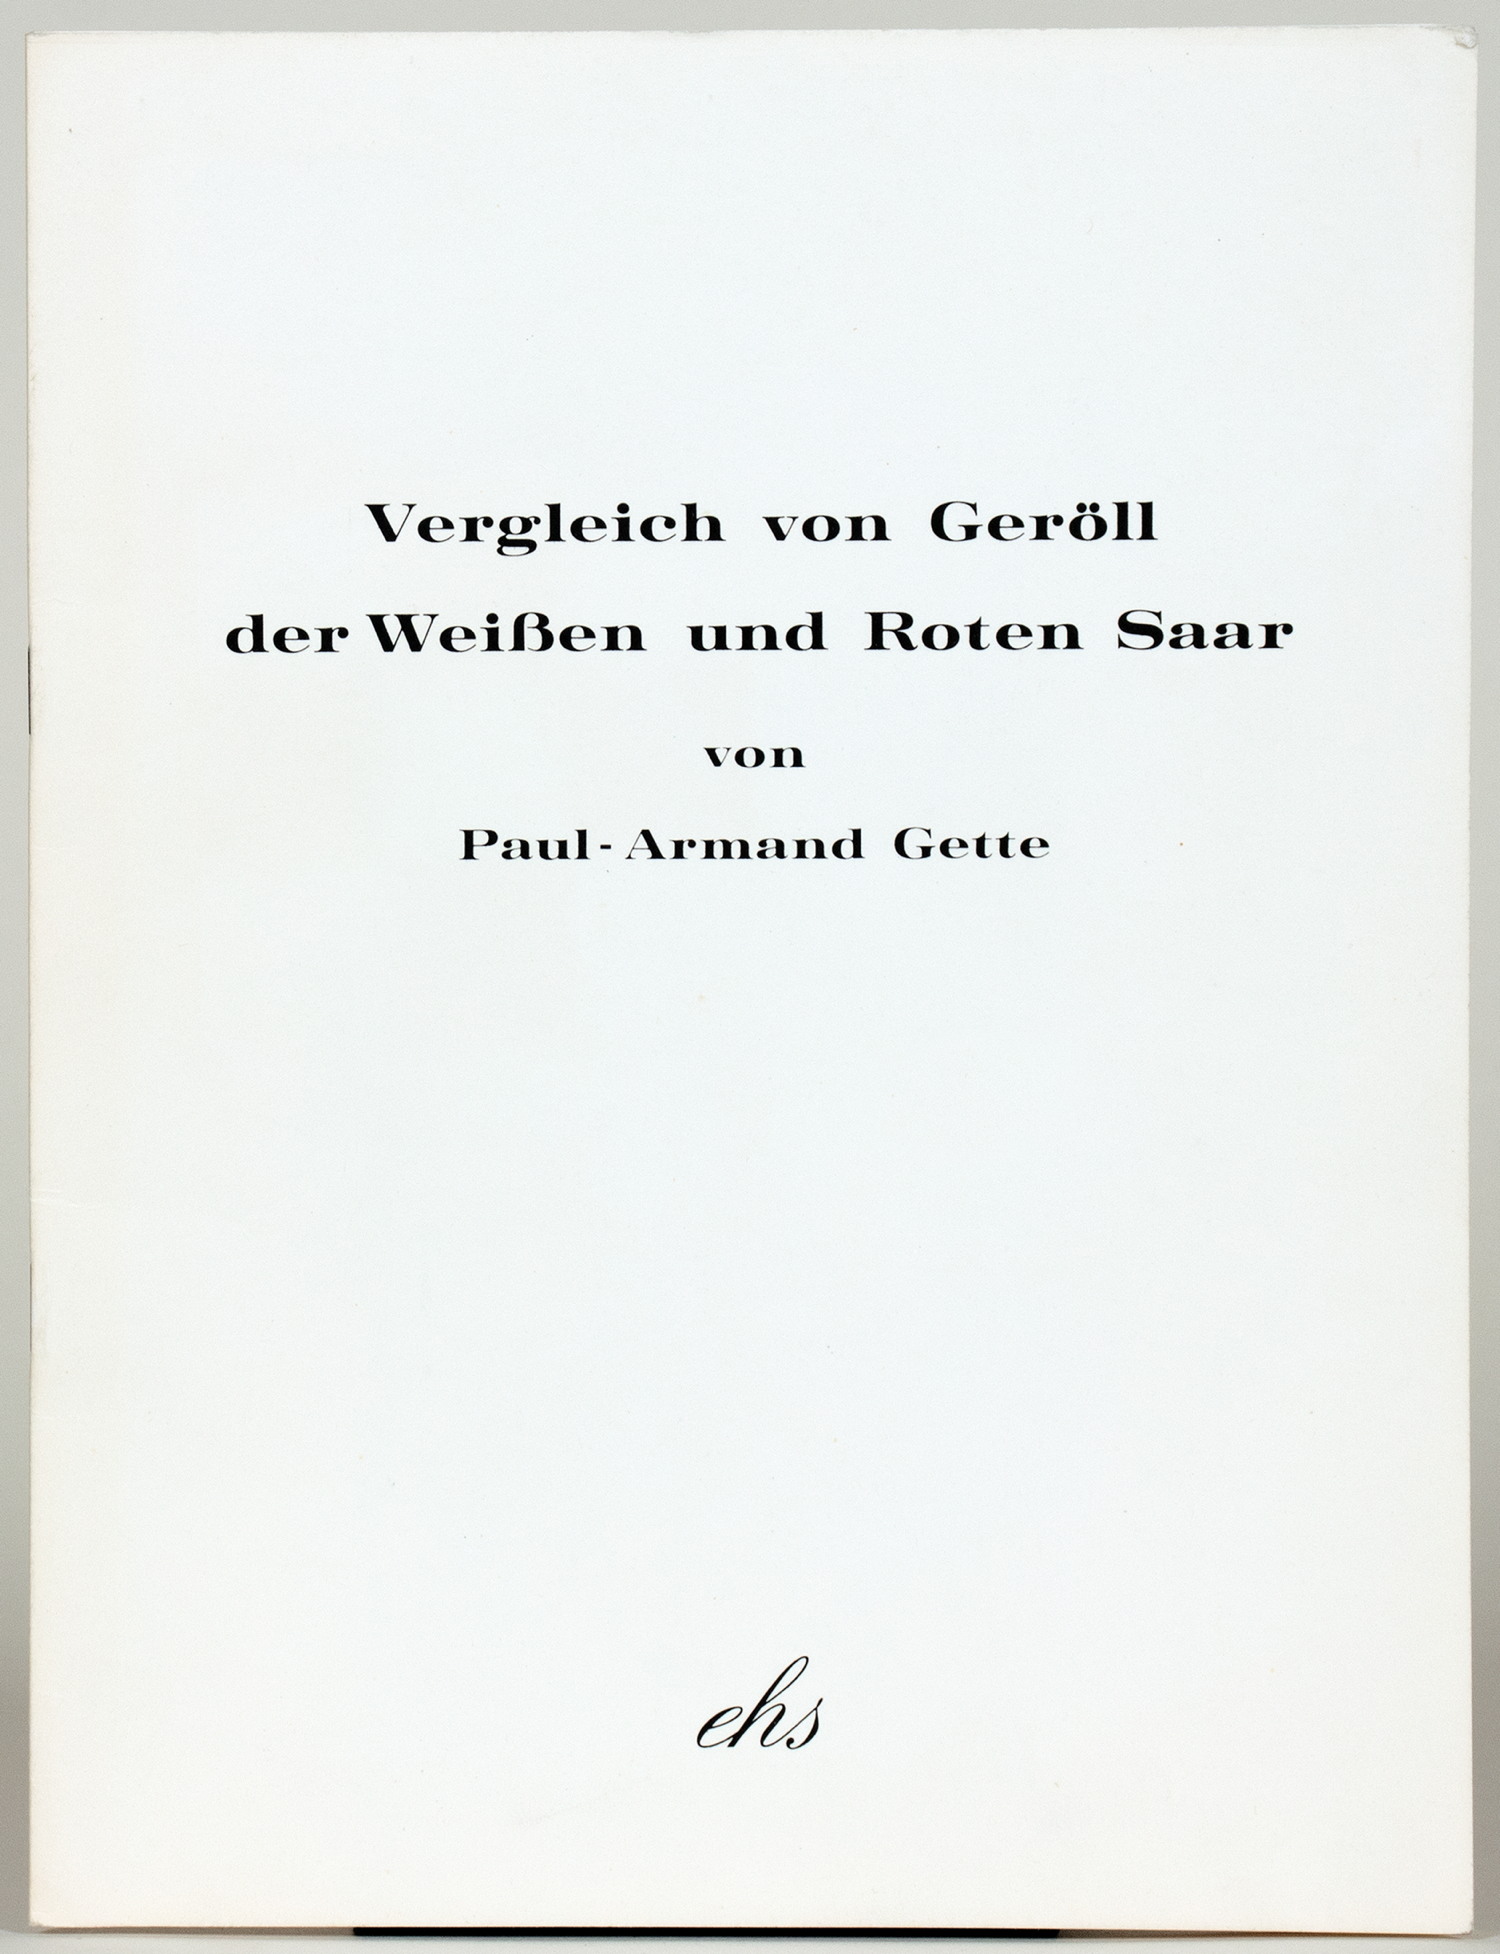 Paul-Armand Gette. Vergleich von Geröll der Weißen und Roten Saar.